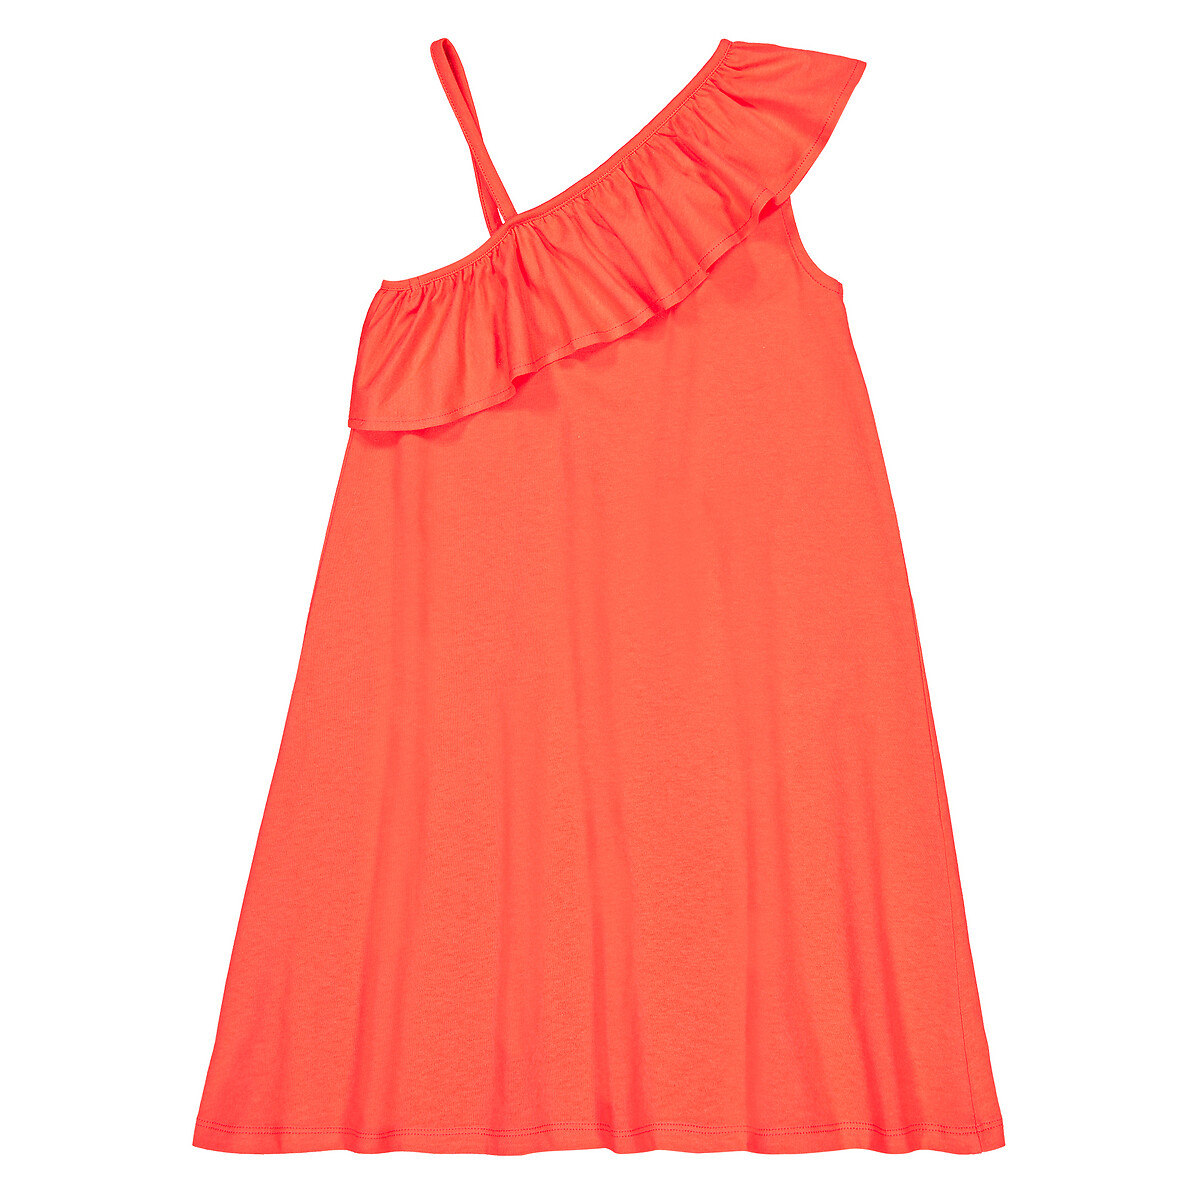 Платье LaRedoute С воланом из биохлопка 3-12 лет 5 лет - 108 см оранжевый, размер 5 лет - 108 см - фото 4